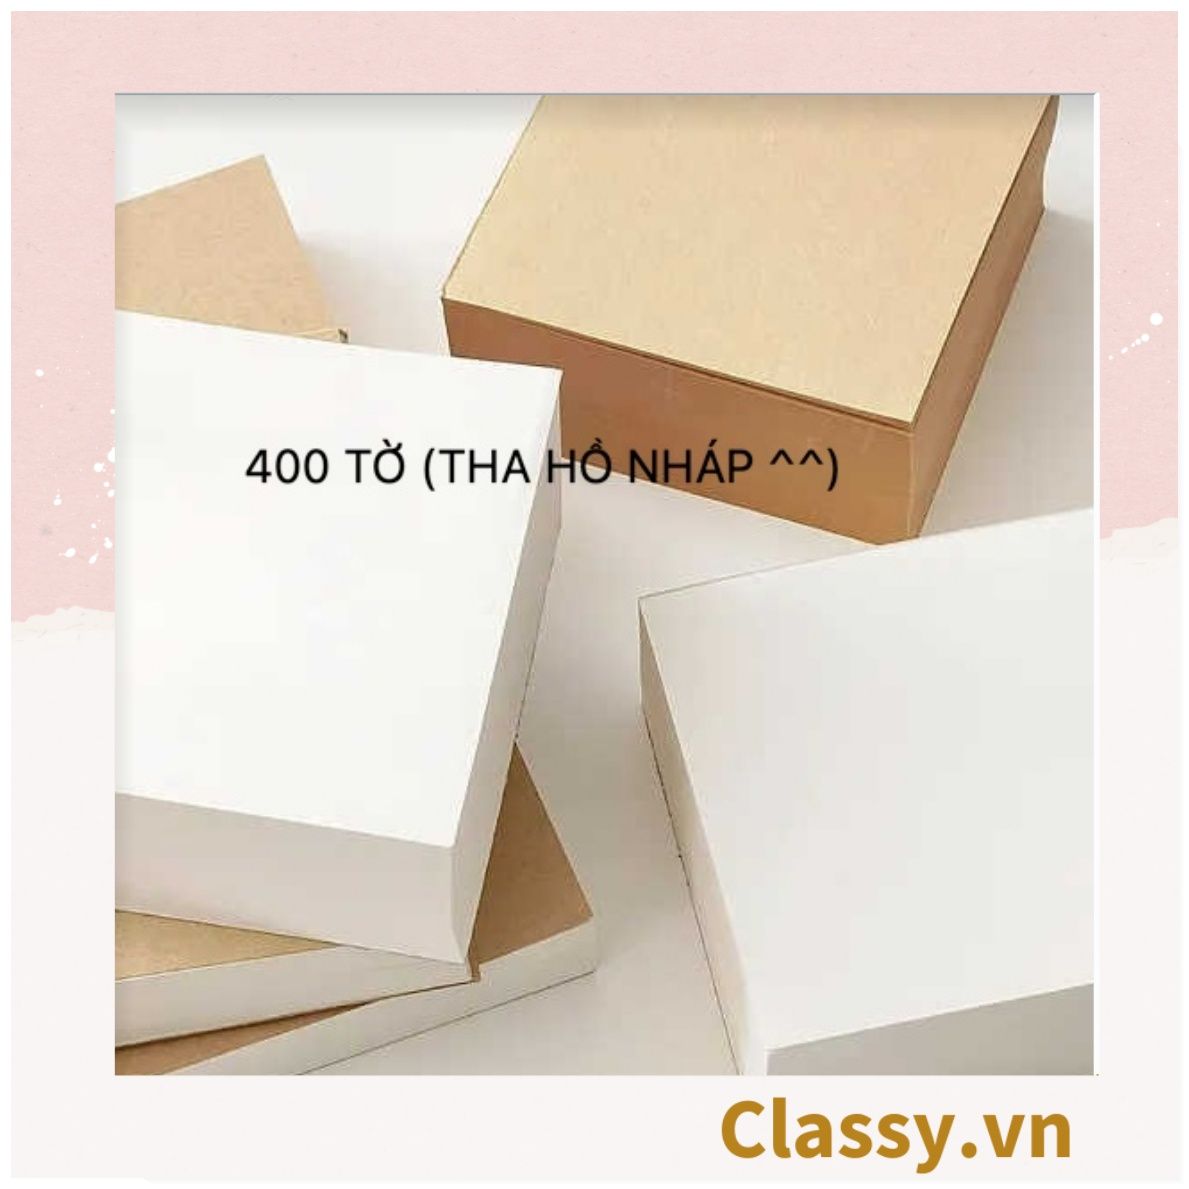  400 tờ Giấy ghi chú trơn cơ bản màu trắng hoặc nâu, kích thước 8 X 8 CM, có thể xé ra, dùng để làm giấy ghi chú  PK1774 